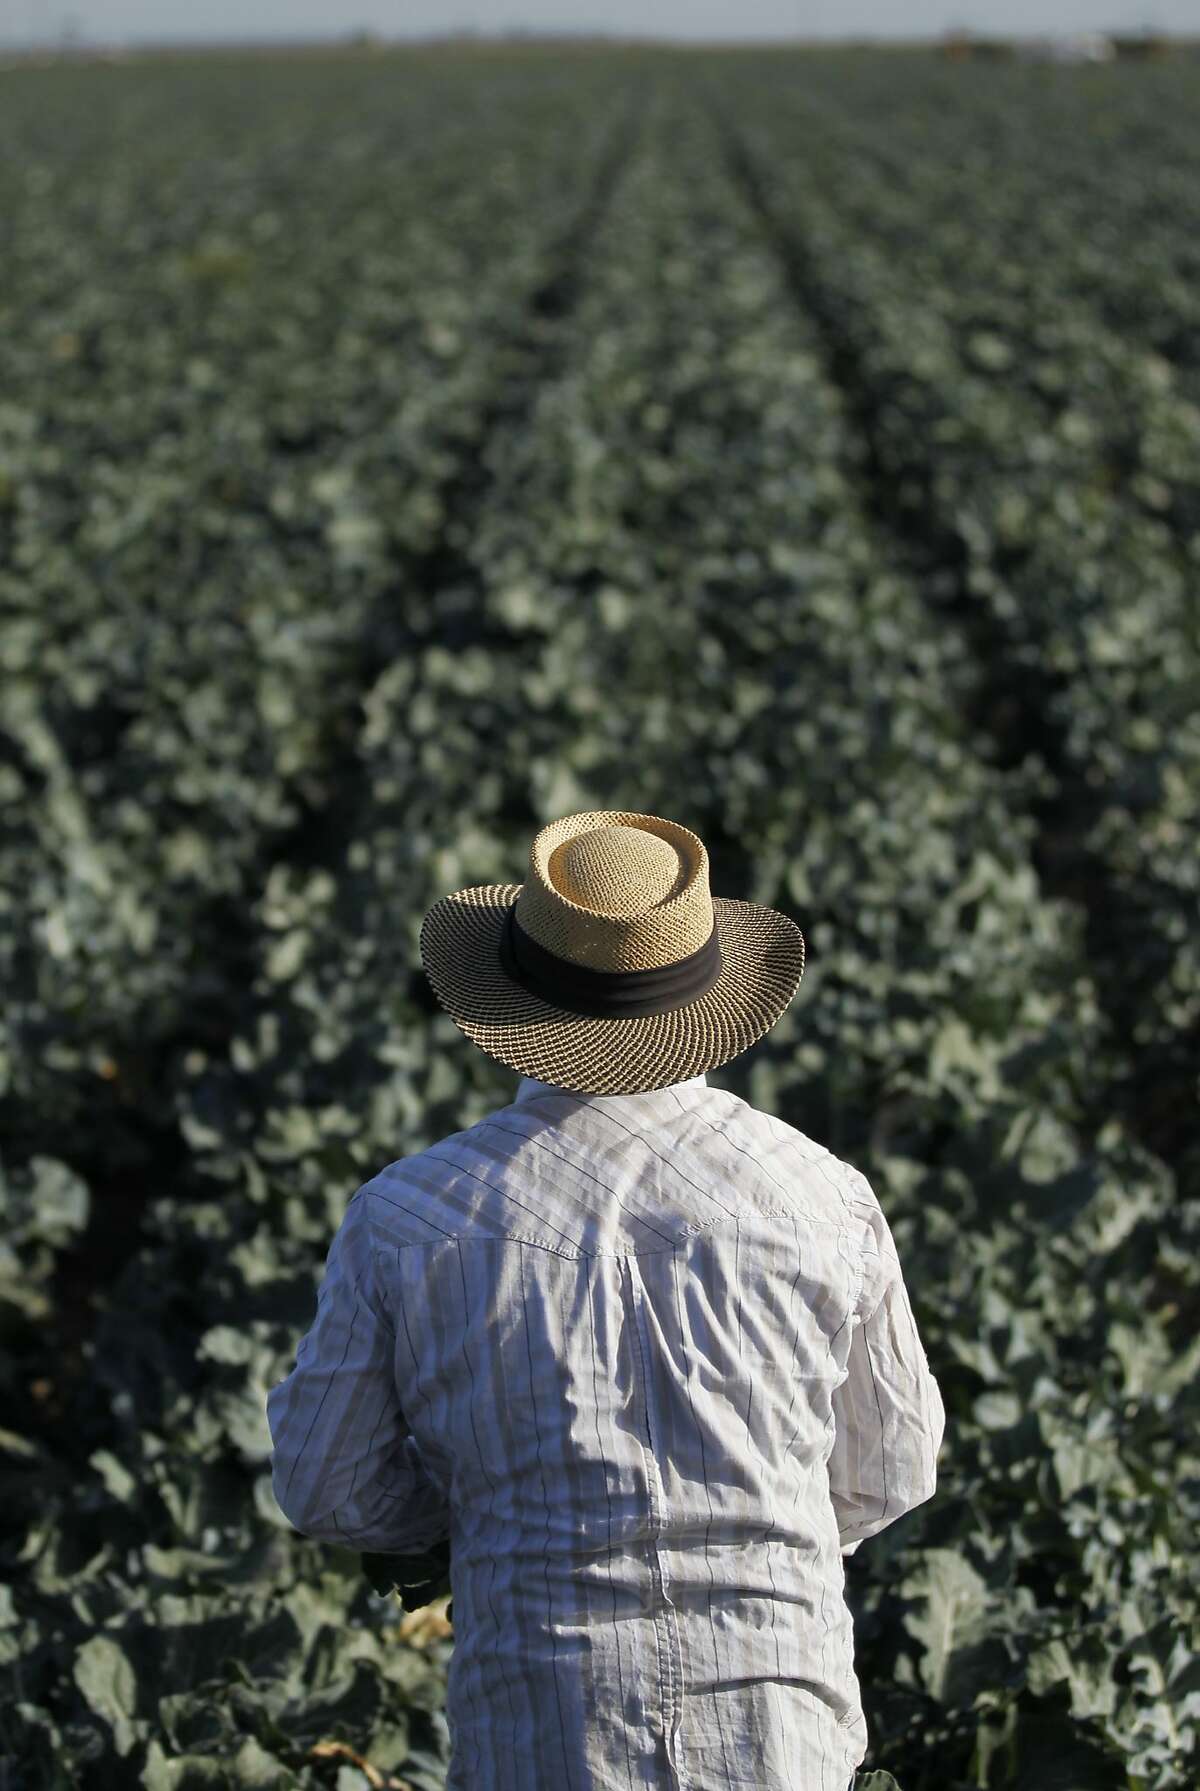 Nelson Villanueva harvests broccoli on Pappas & Co farm in Mendota, Calif., April 18, 2014.